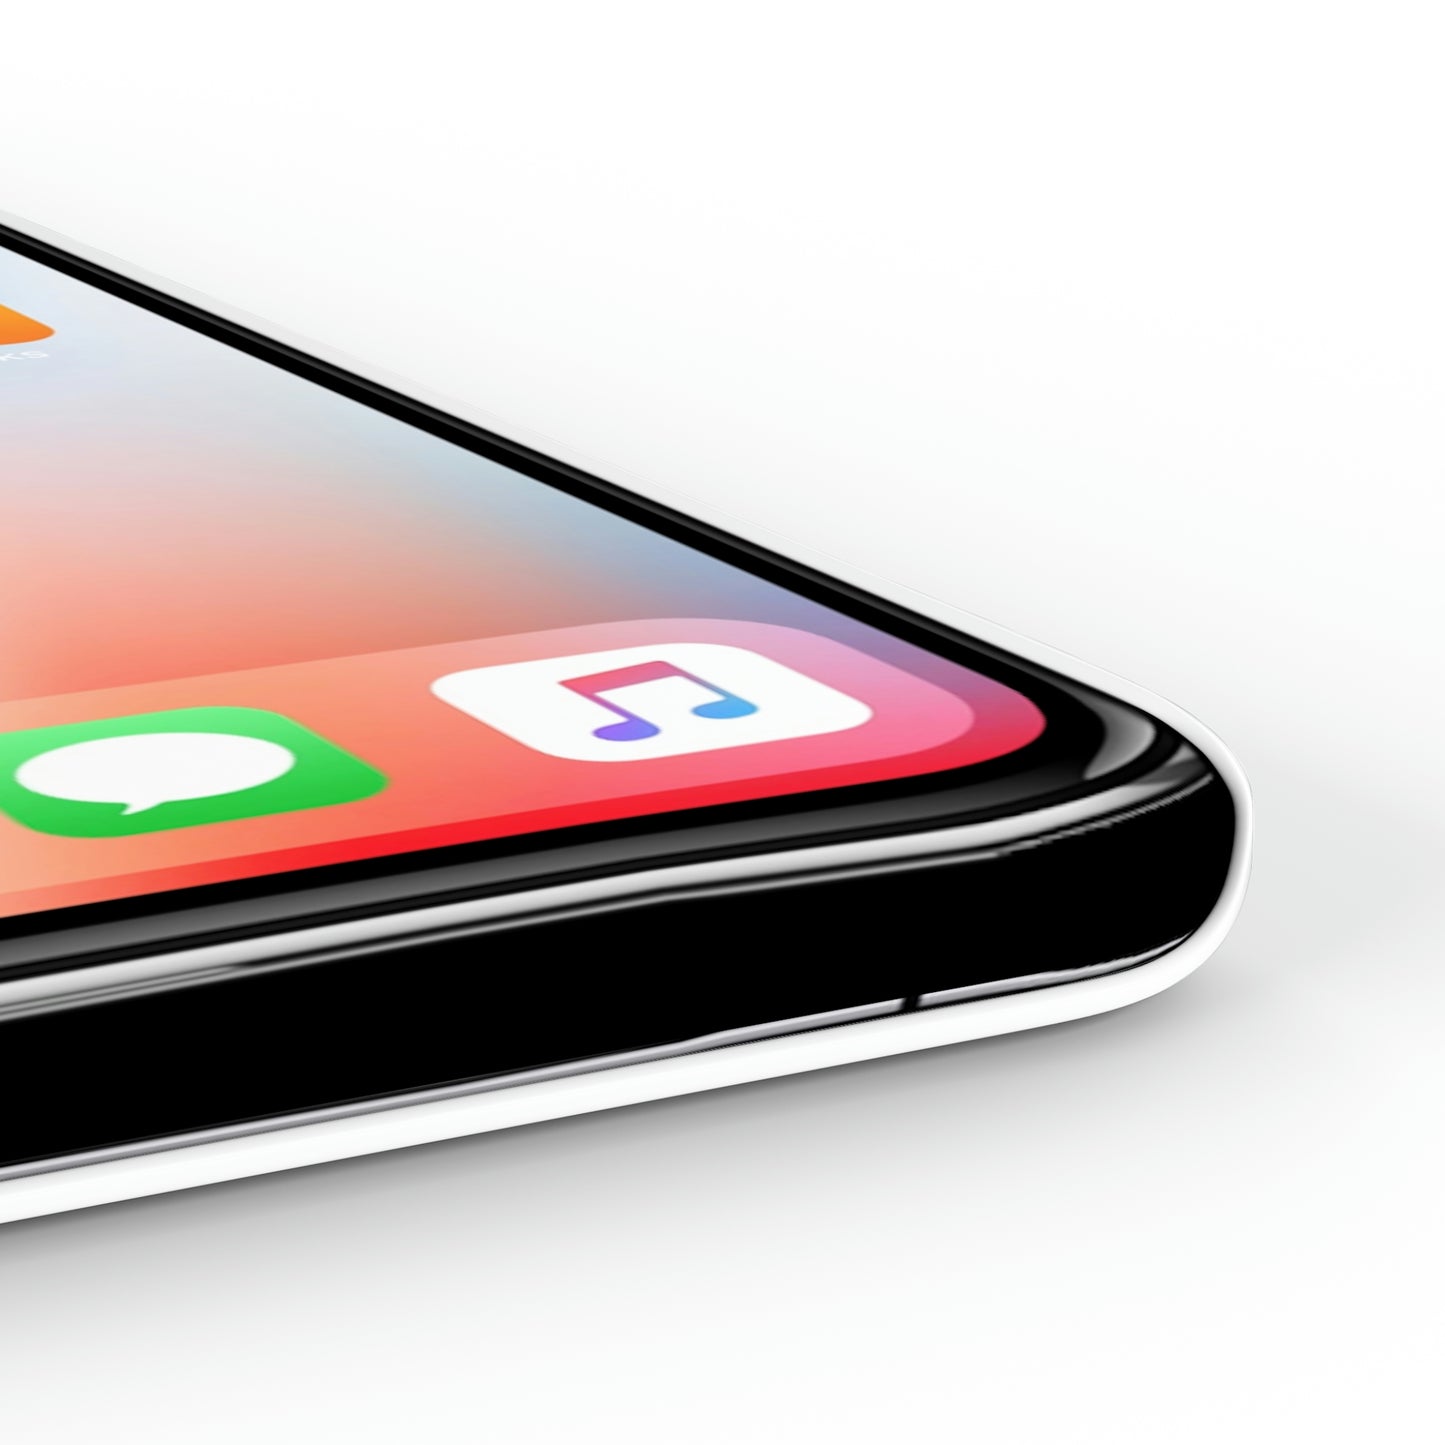 WWJD iPhone Slim Phone Case